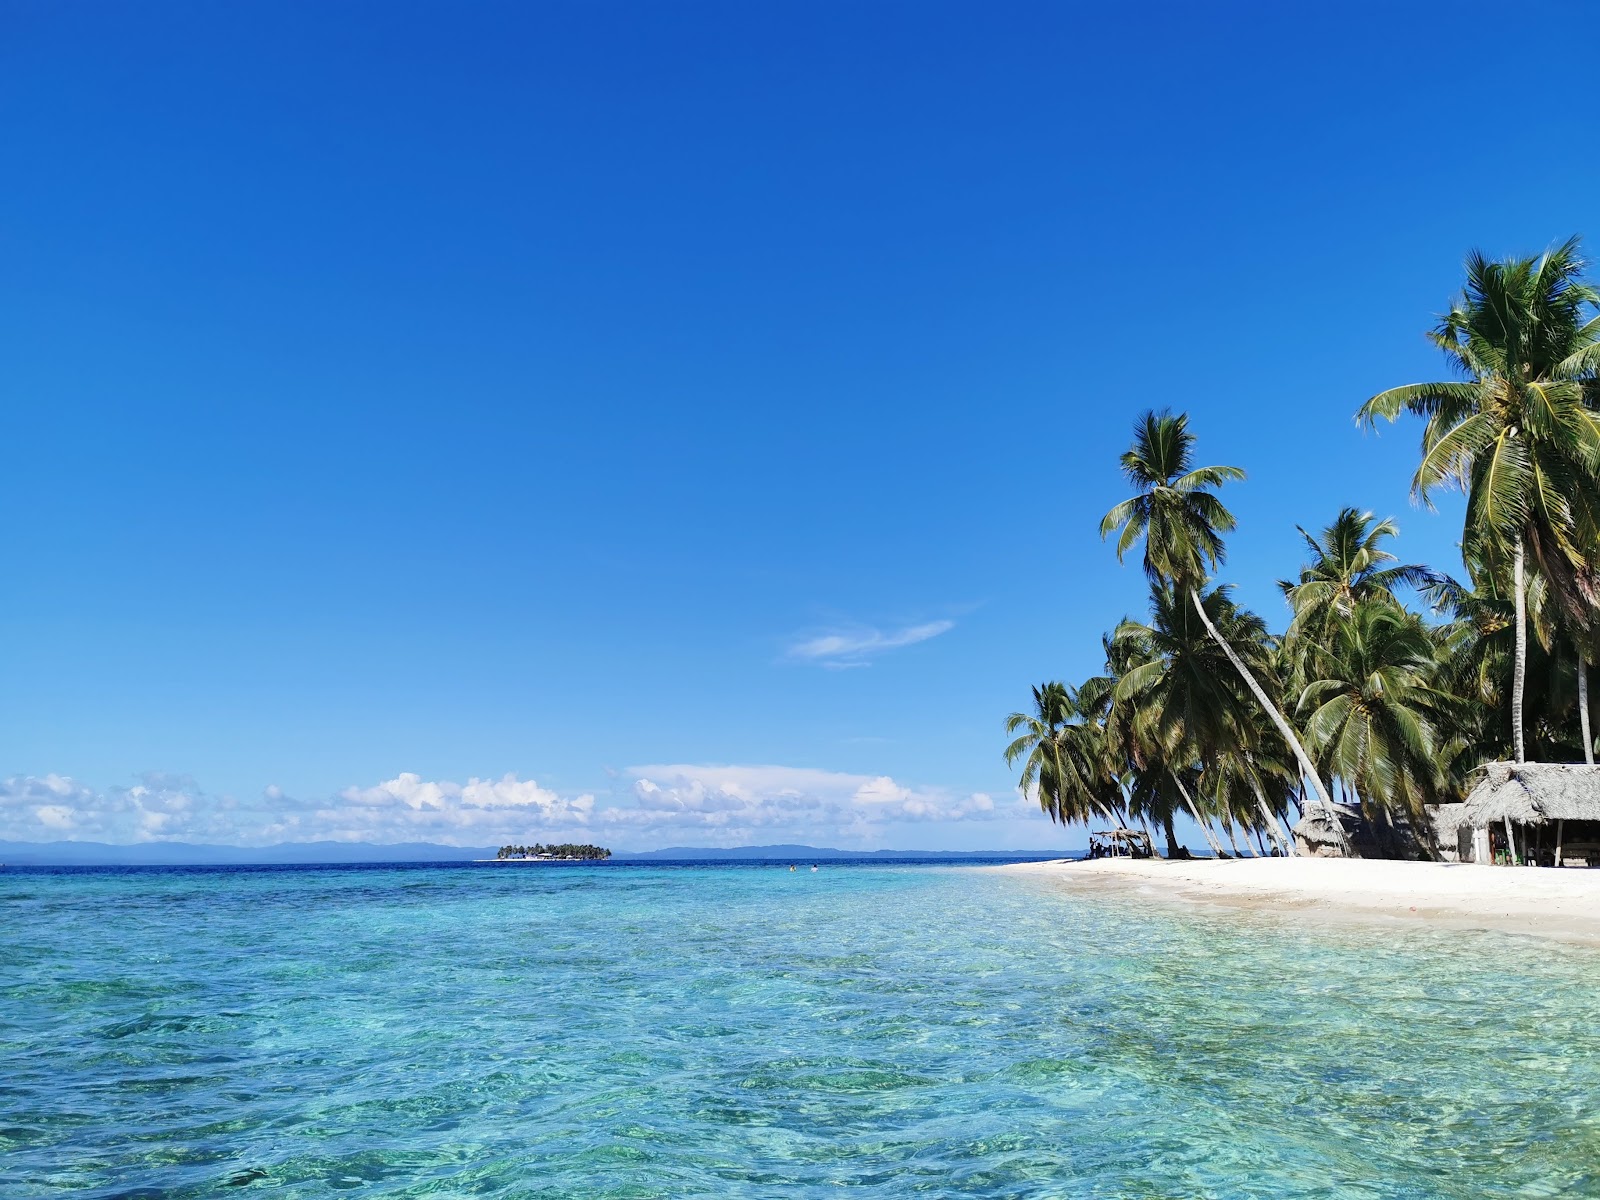 安苏埃洛岛海滩的照片 带有碧绿色纯水表面